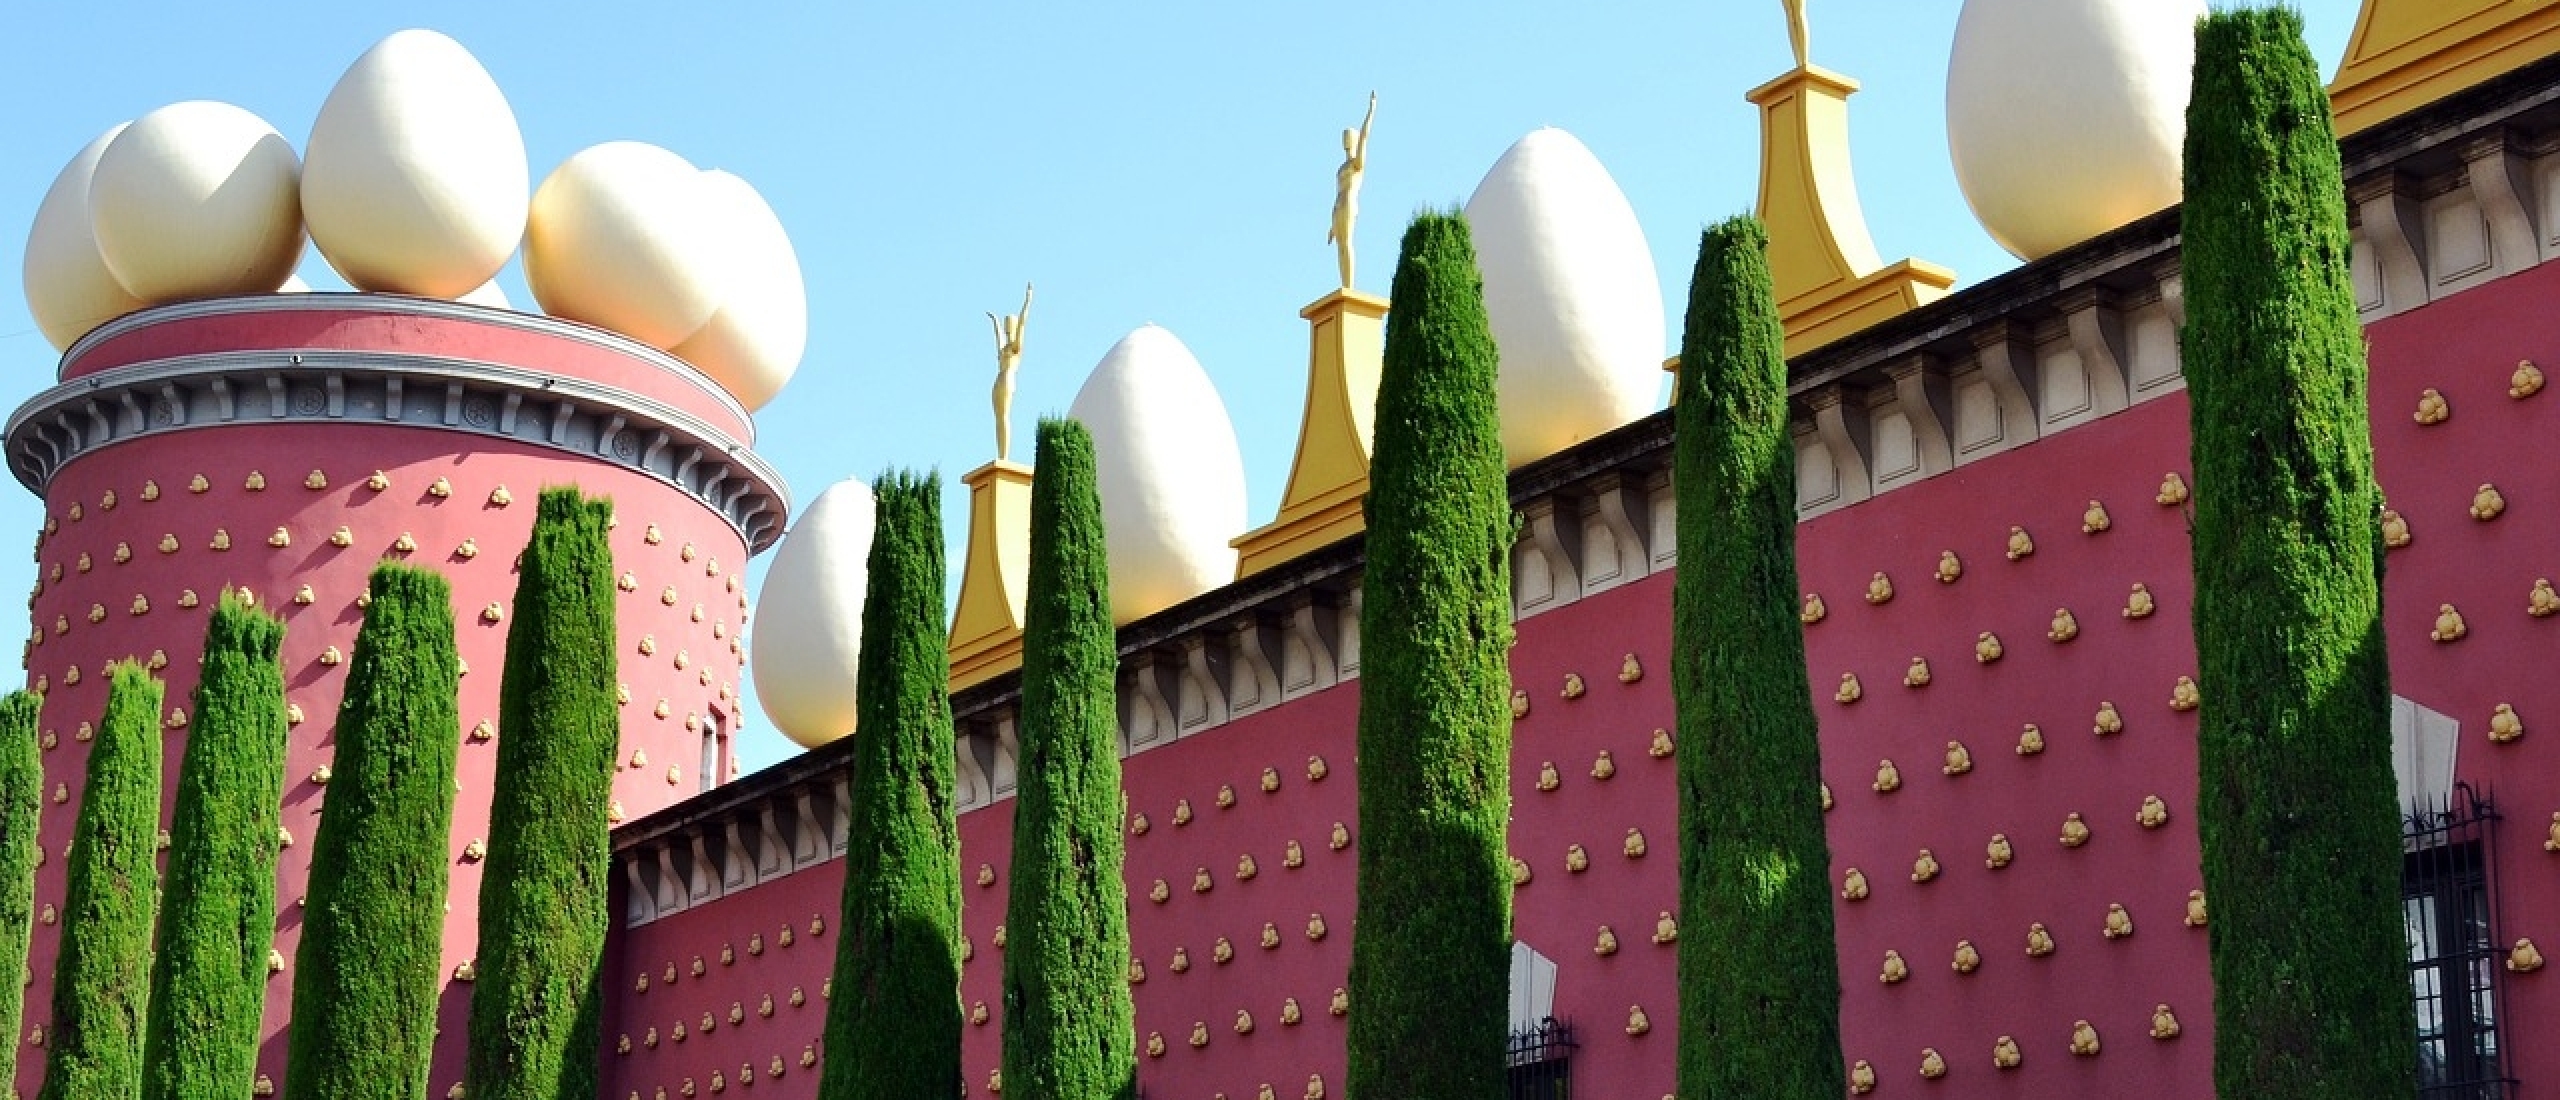 Catalonië, een inspiratielandschap voor Dalí